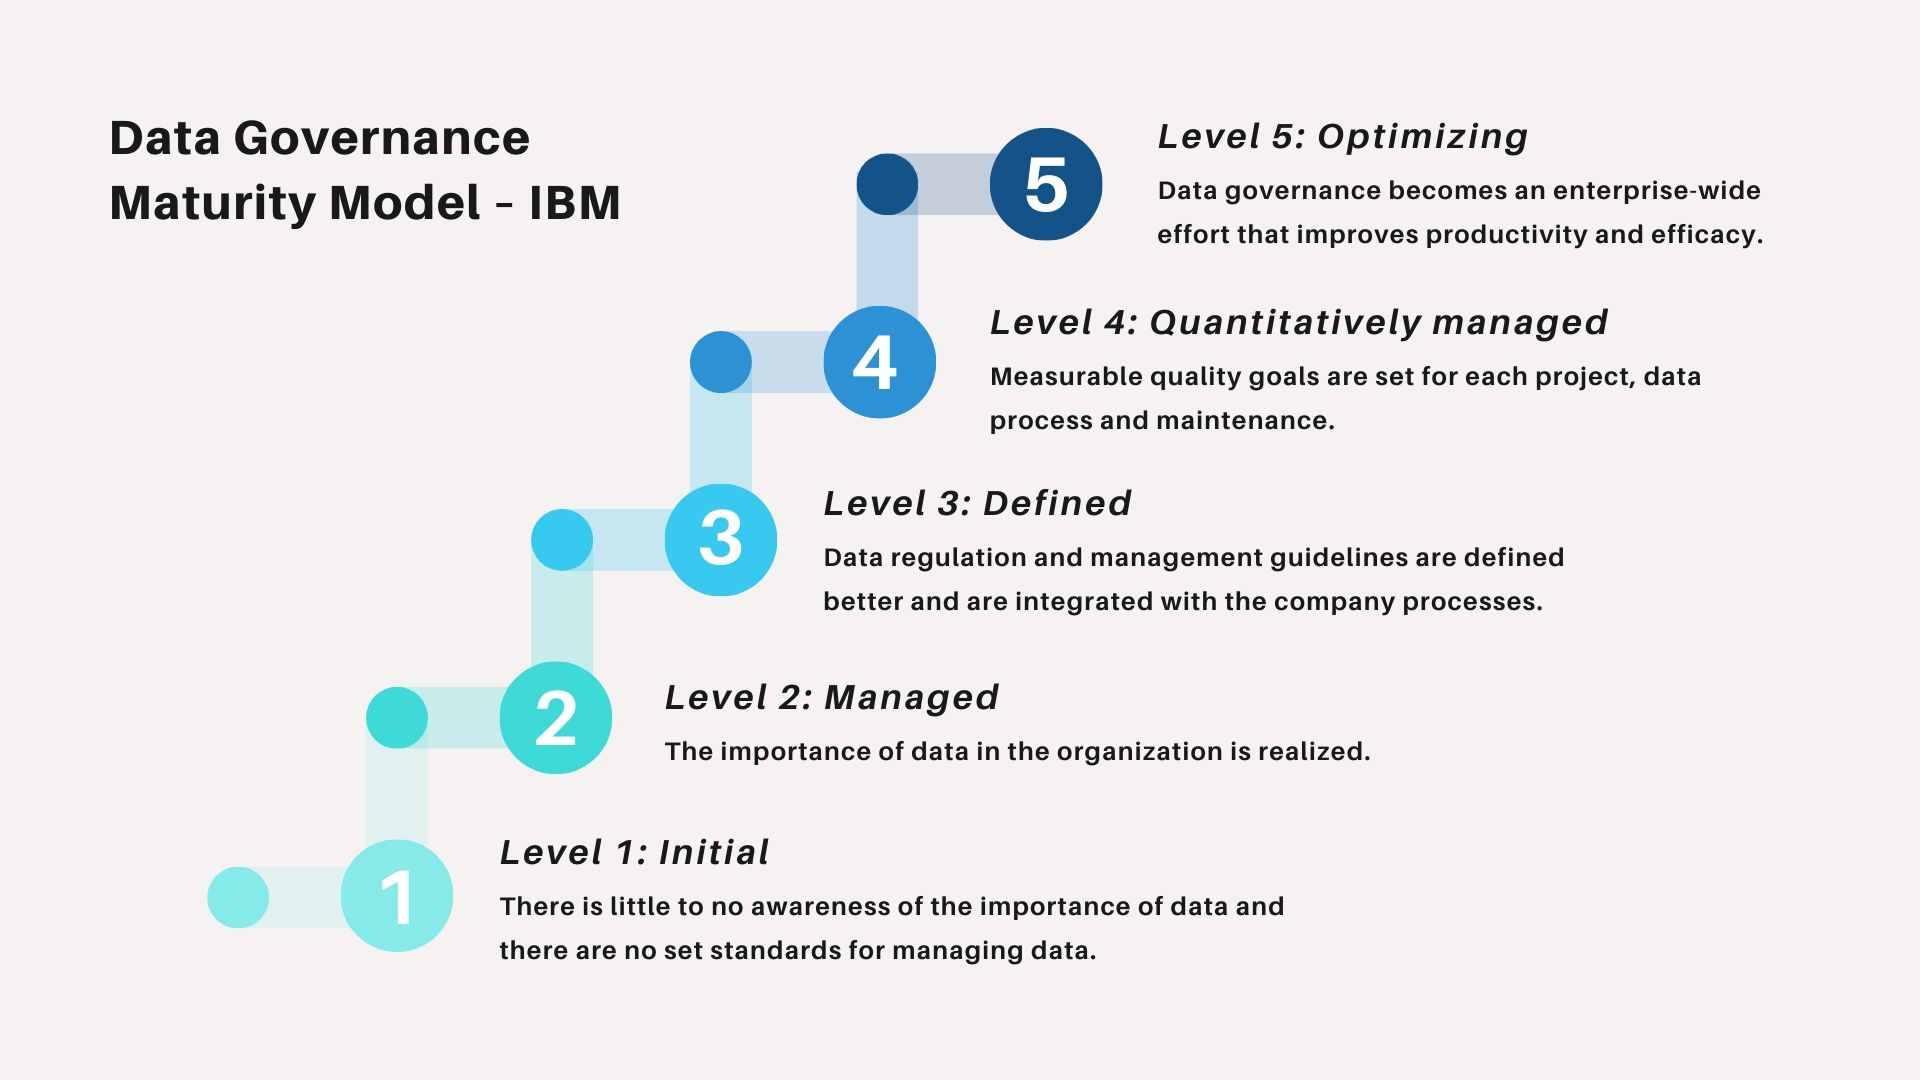 Data Governance Maturity Models Explained Gartner And Ibm